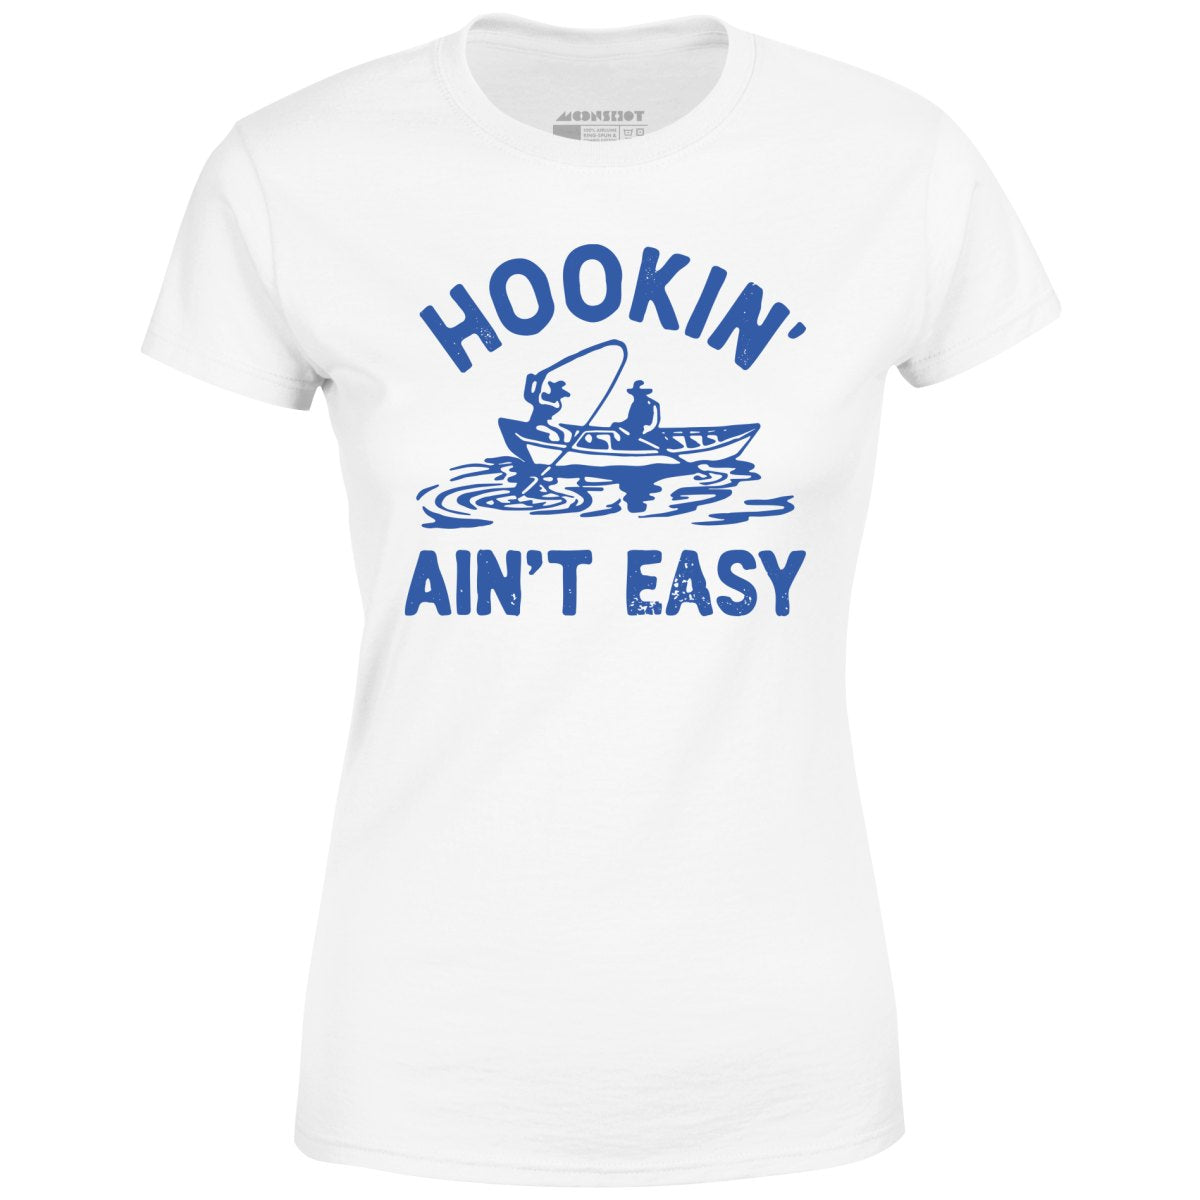 Hookin' Ain't Easy - Women's T-Shirt